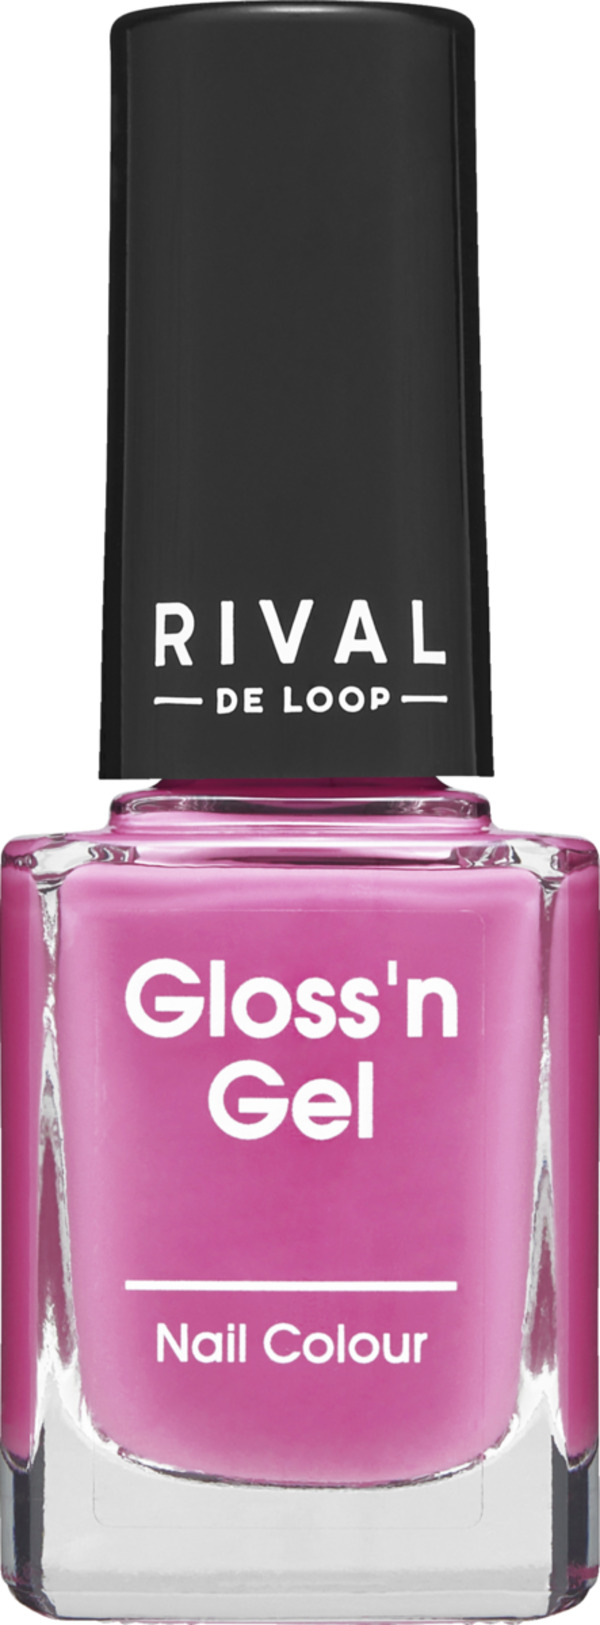 Bild 1 von RIVAL DE LOOP Gloss'n Gel Nail Colour 13